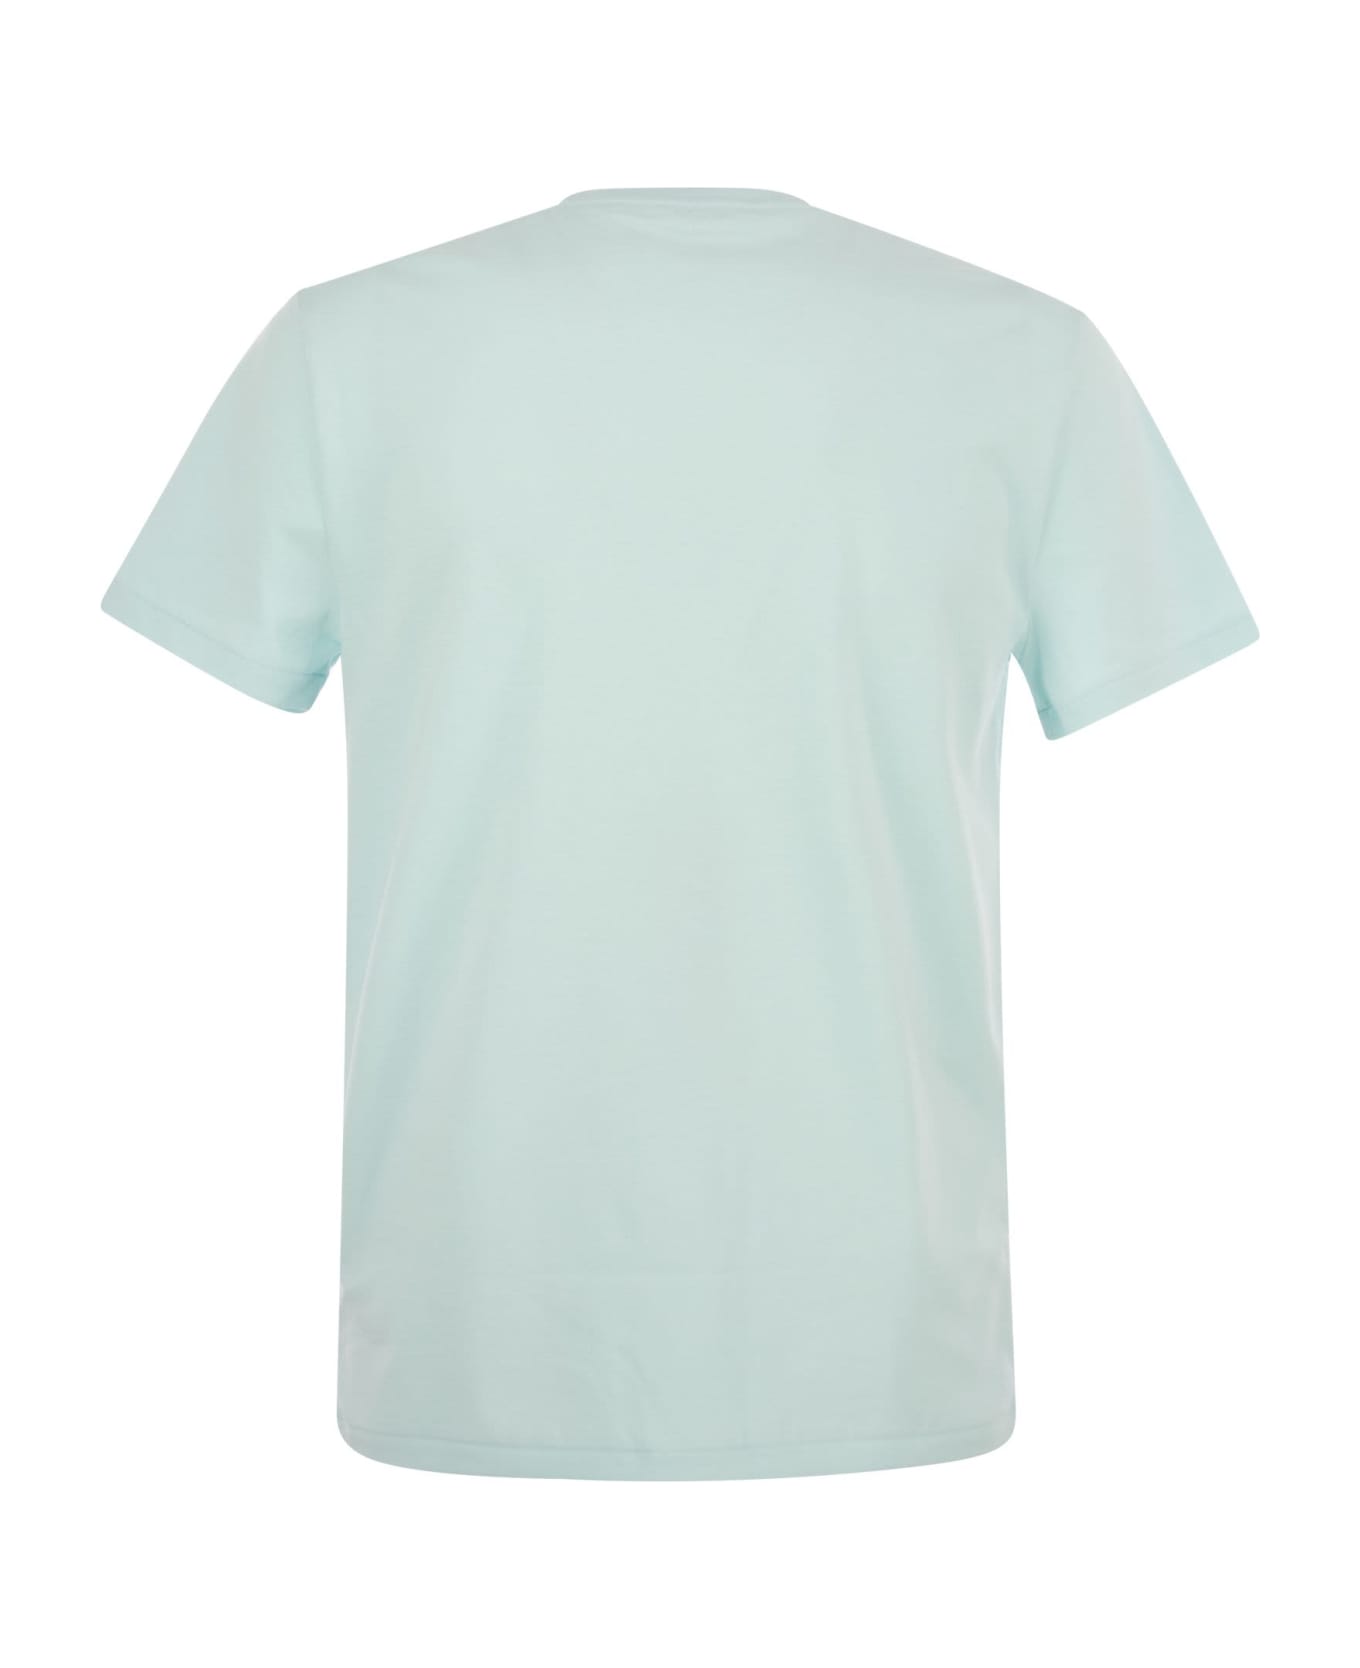 Polo Ralph Lauren Round Neck T-shirt - Light Blue